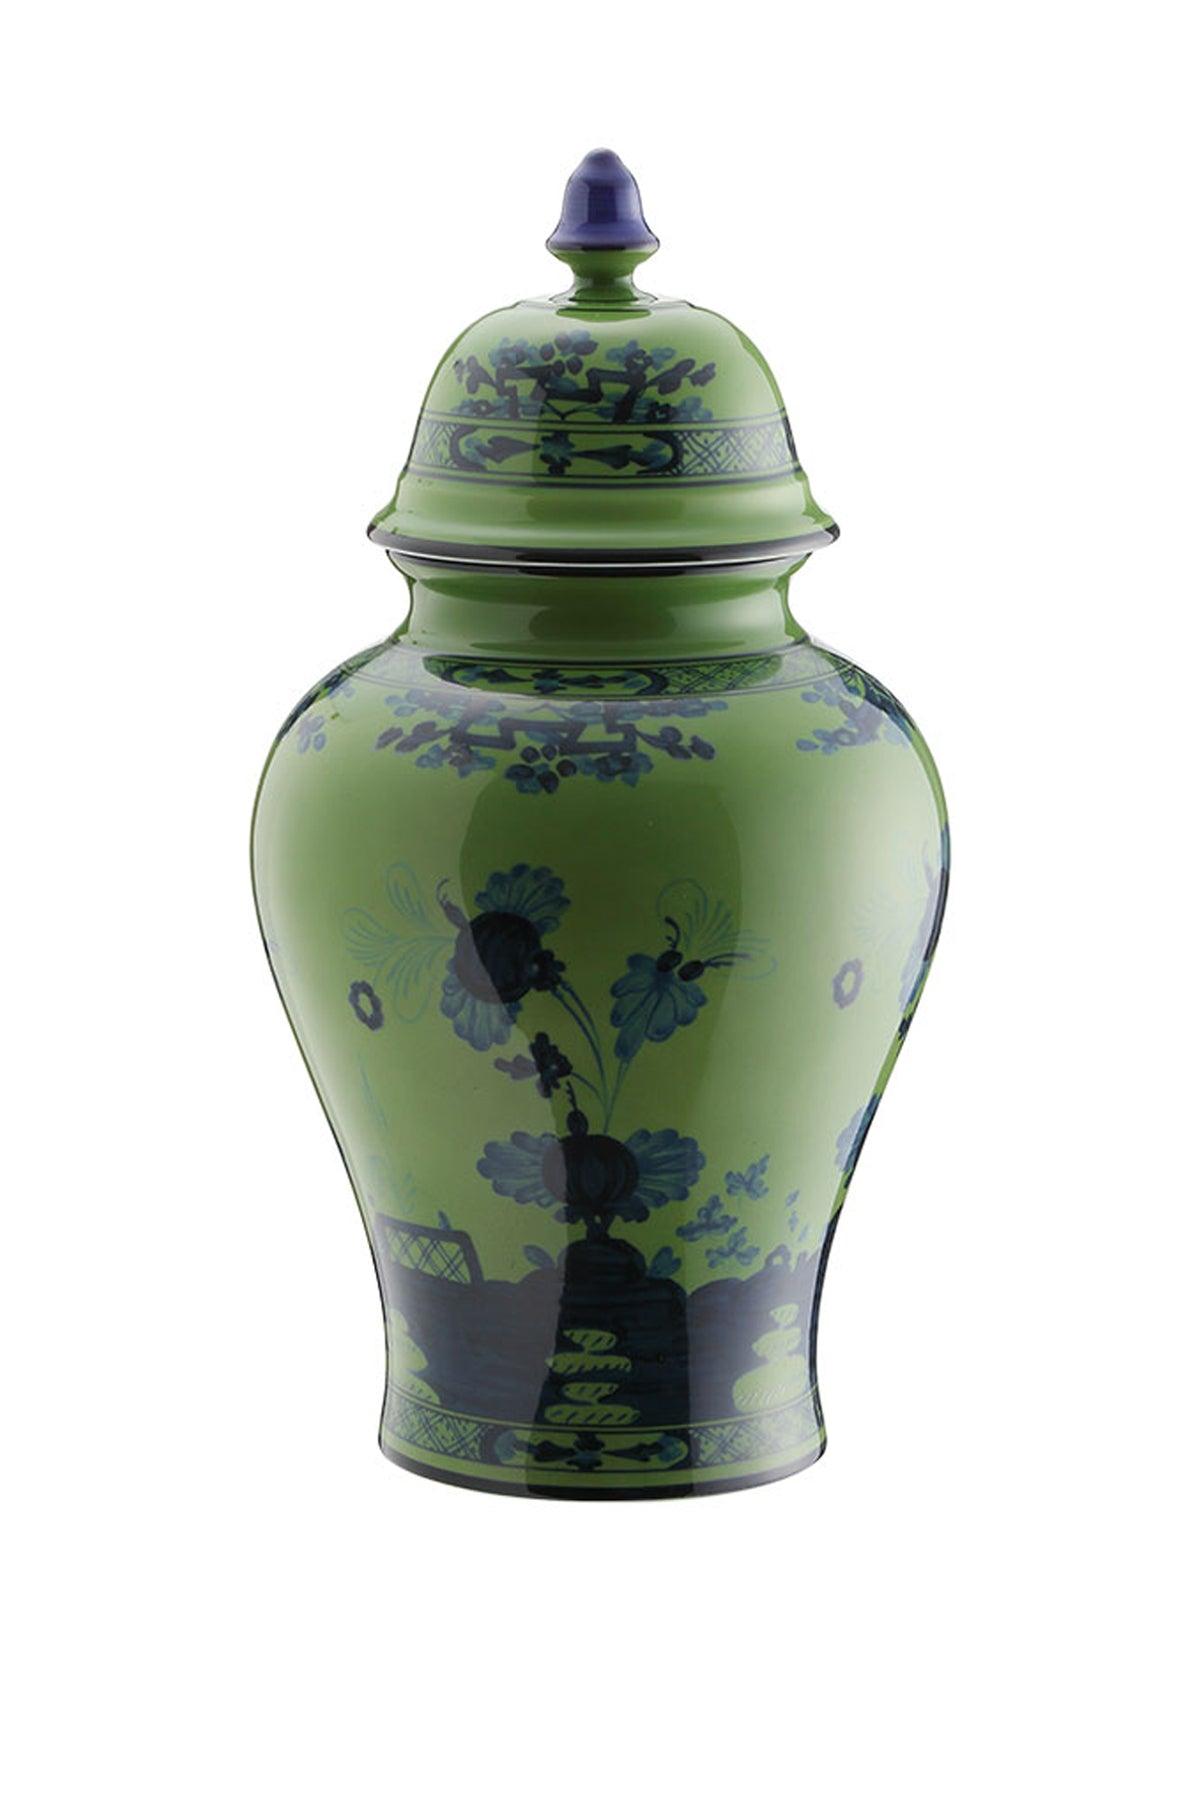 Ginori 1735 Potiche Vase With Cover Oriente Italiano H 31 Cm - JOHN JULIA